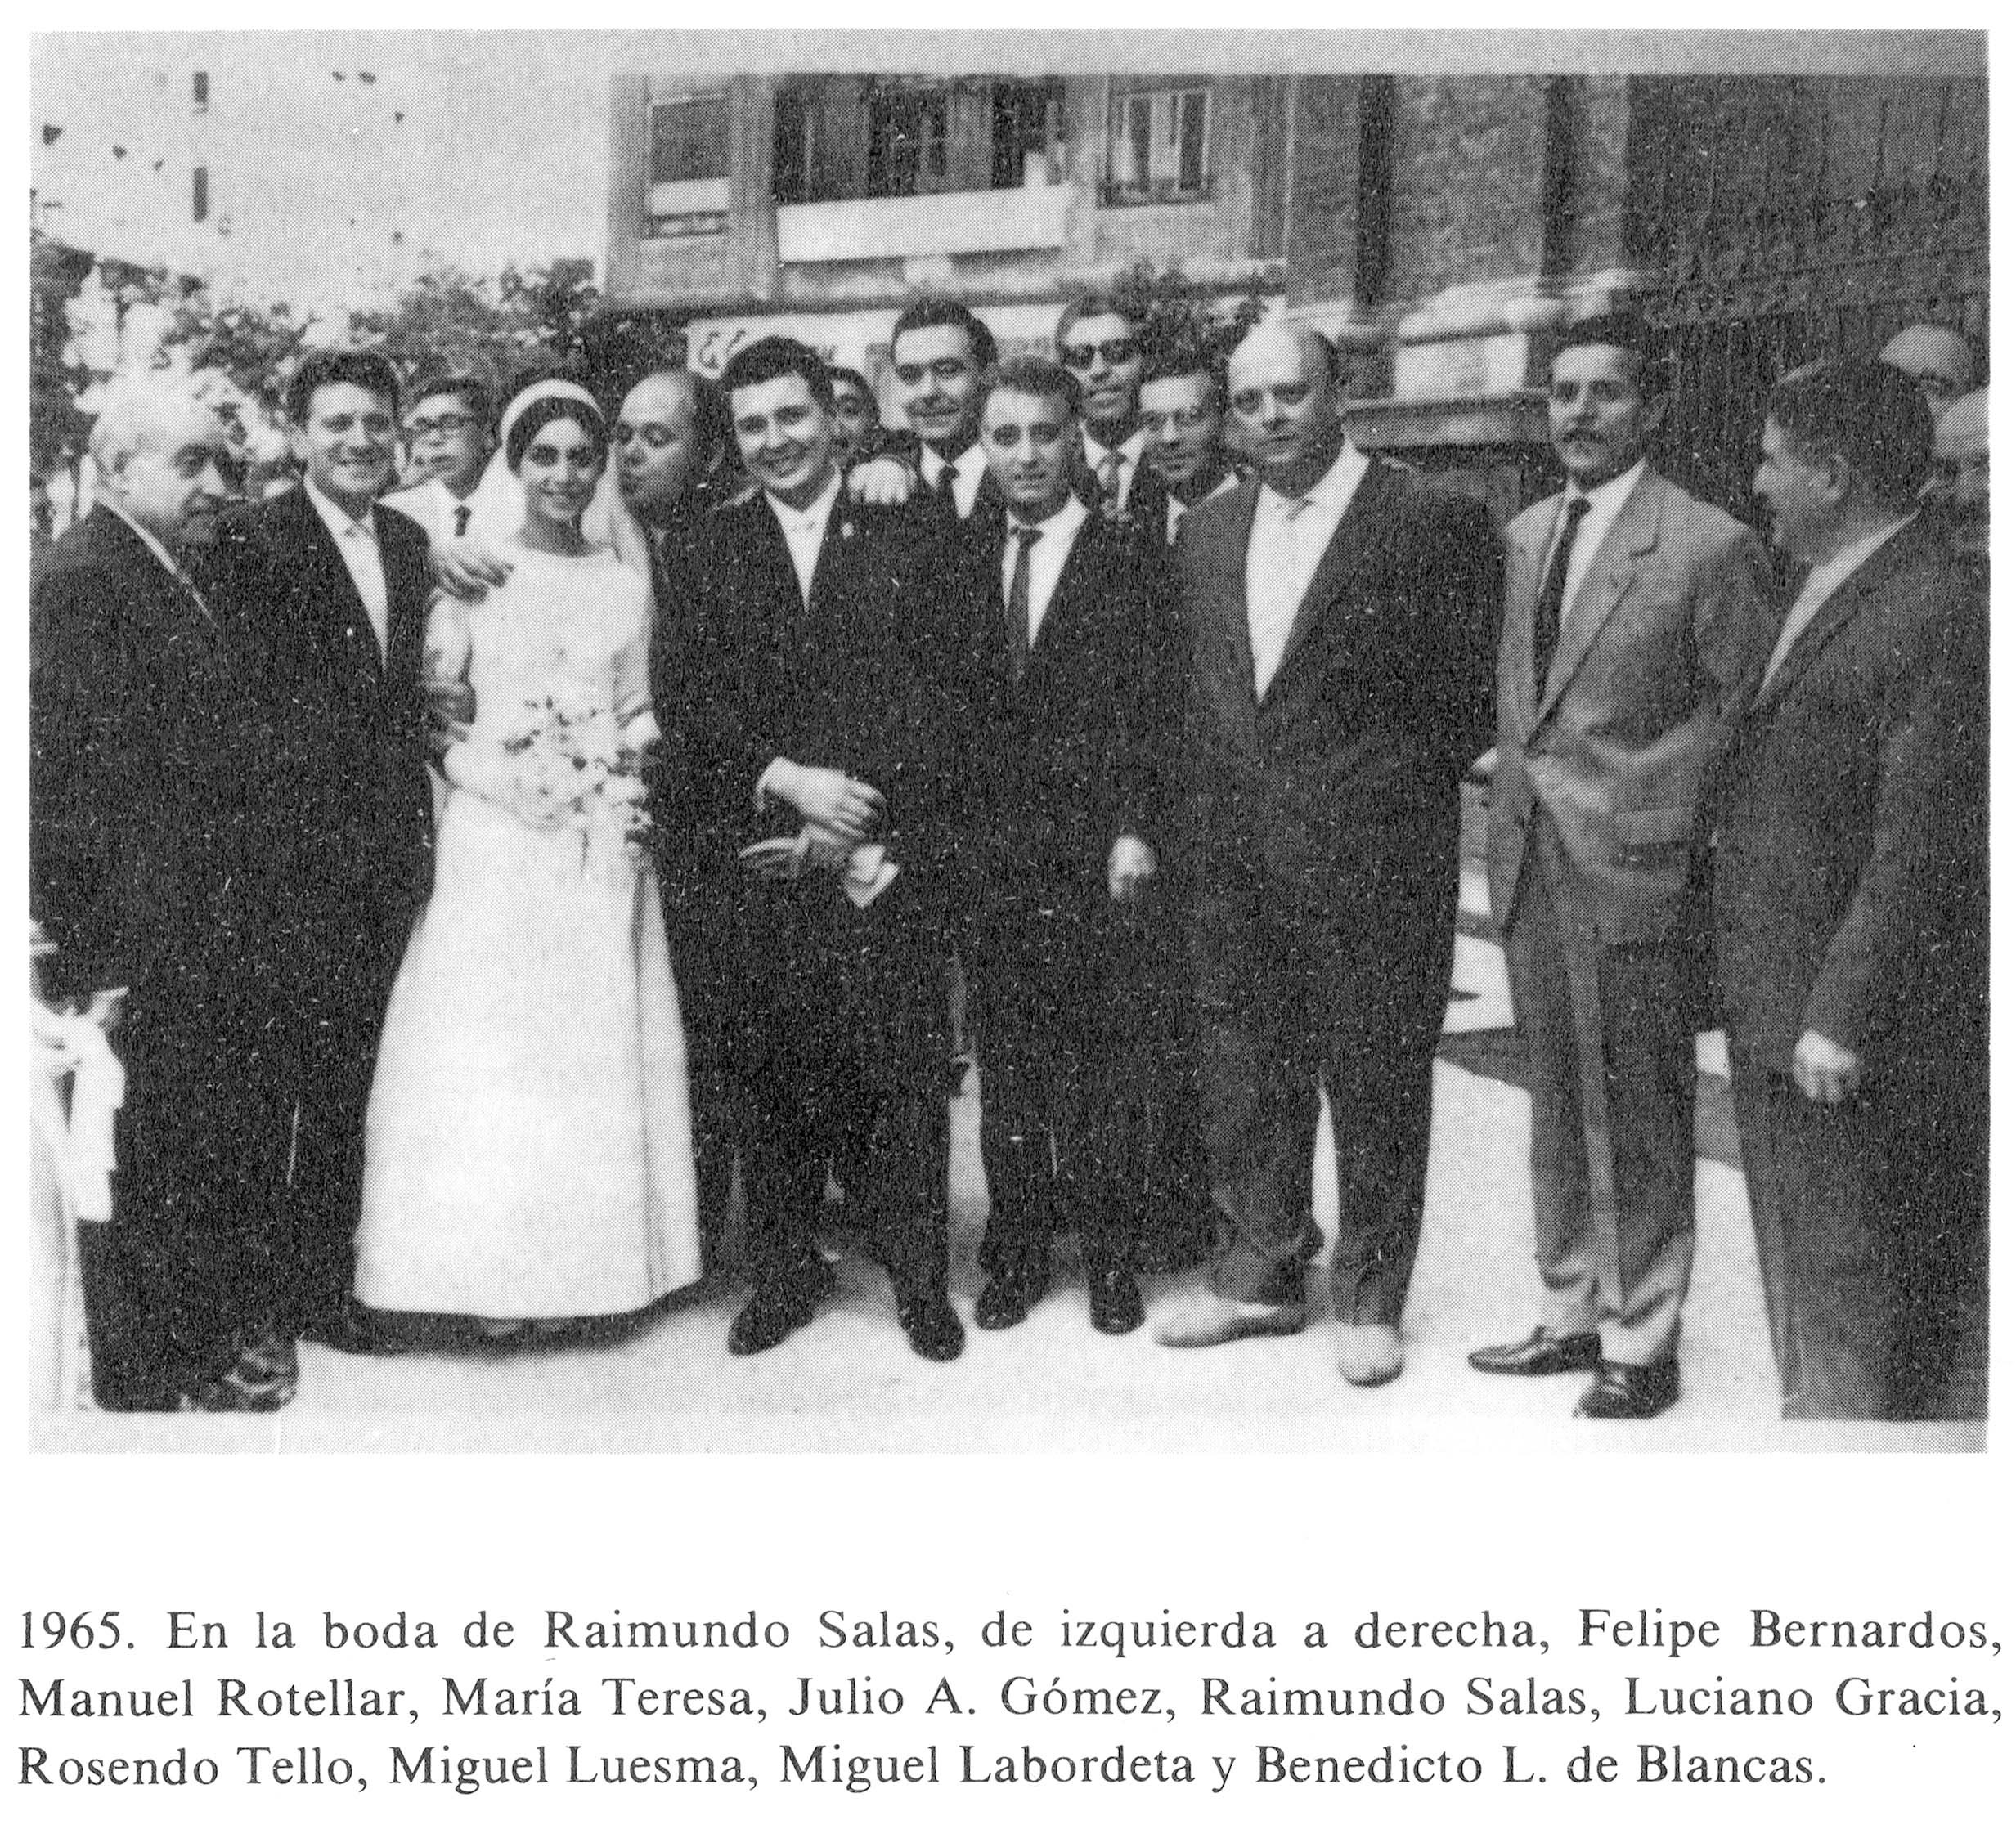 boda Raimundo salas